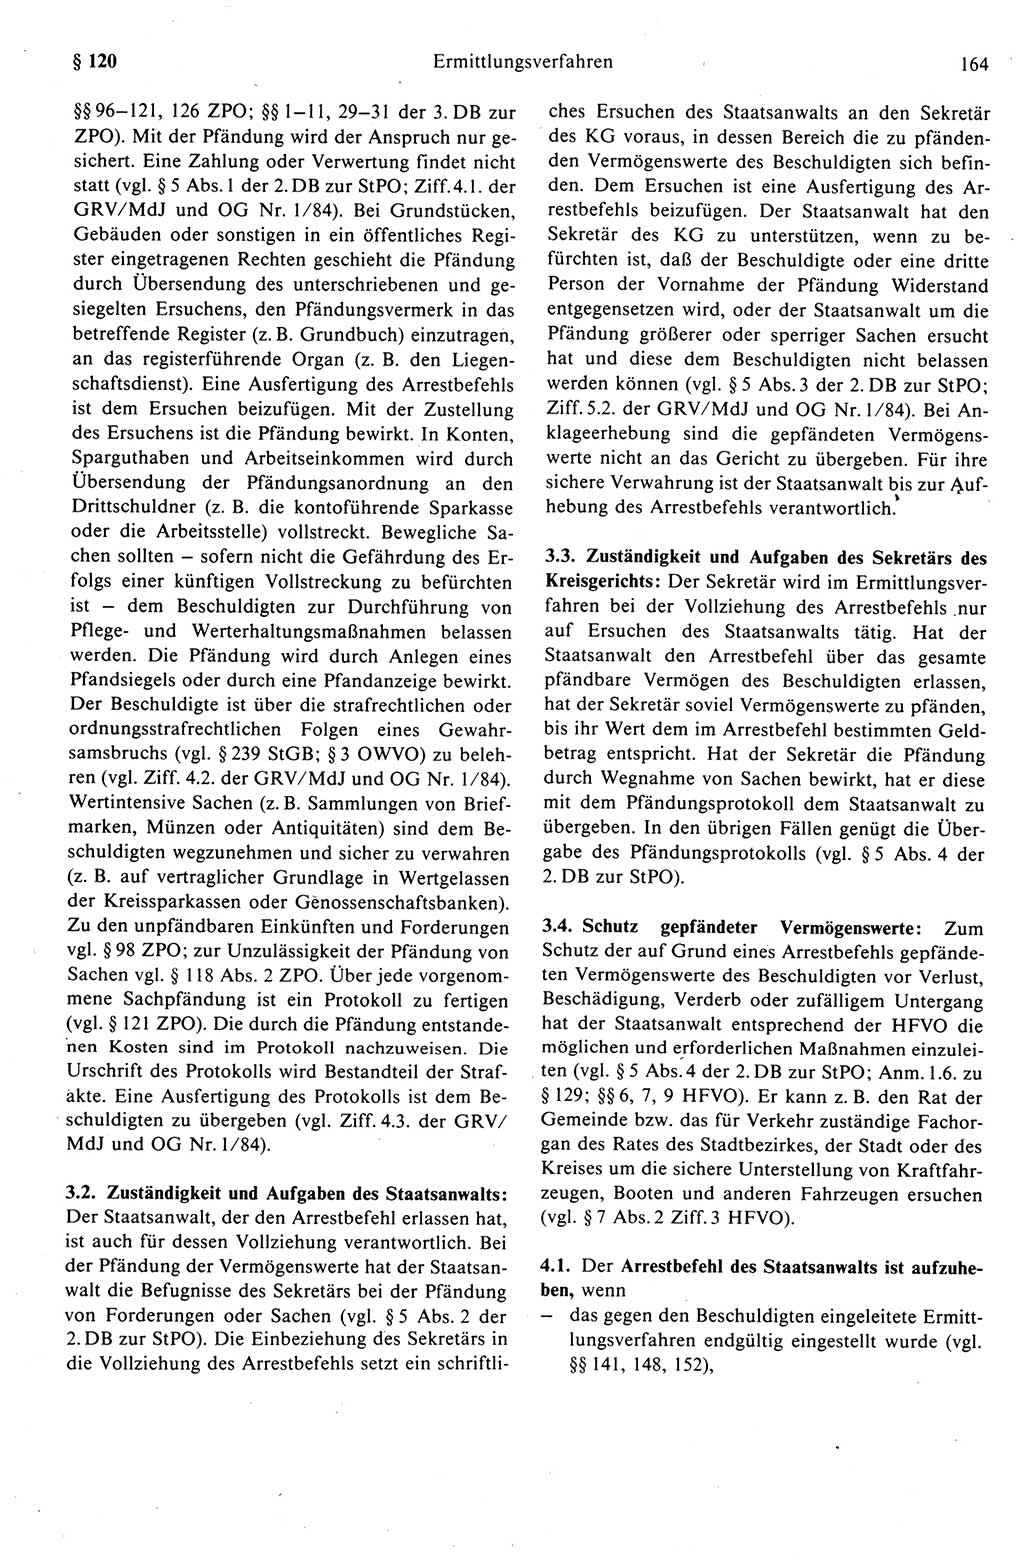 Strafprozeßrecht der DDR (Deutsche Demokratische Republik), Kommentar zur Strafprozeßordnung (StPO) 1989, Seite 164 (Strafprozeßr. DDR Komm. StPO 1989, S. 164)